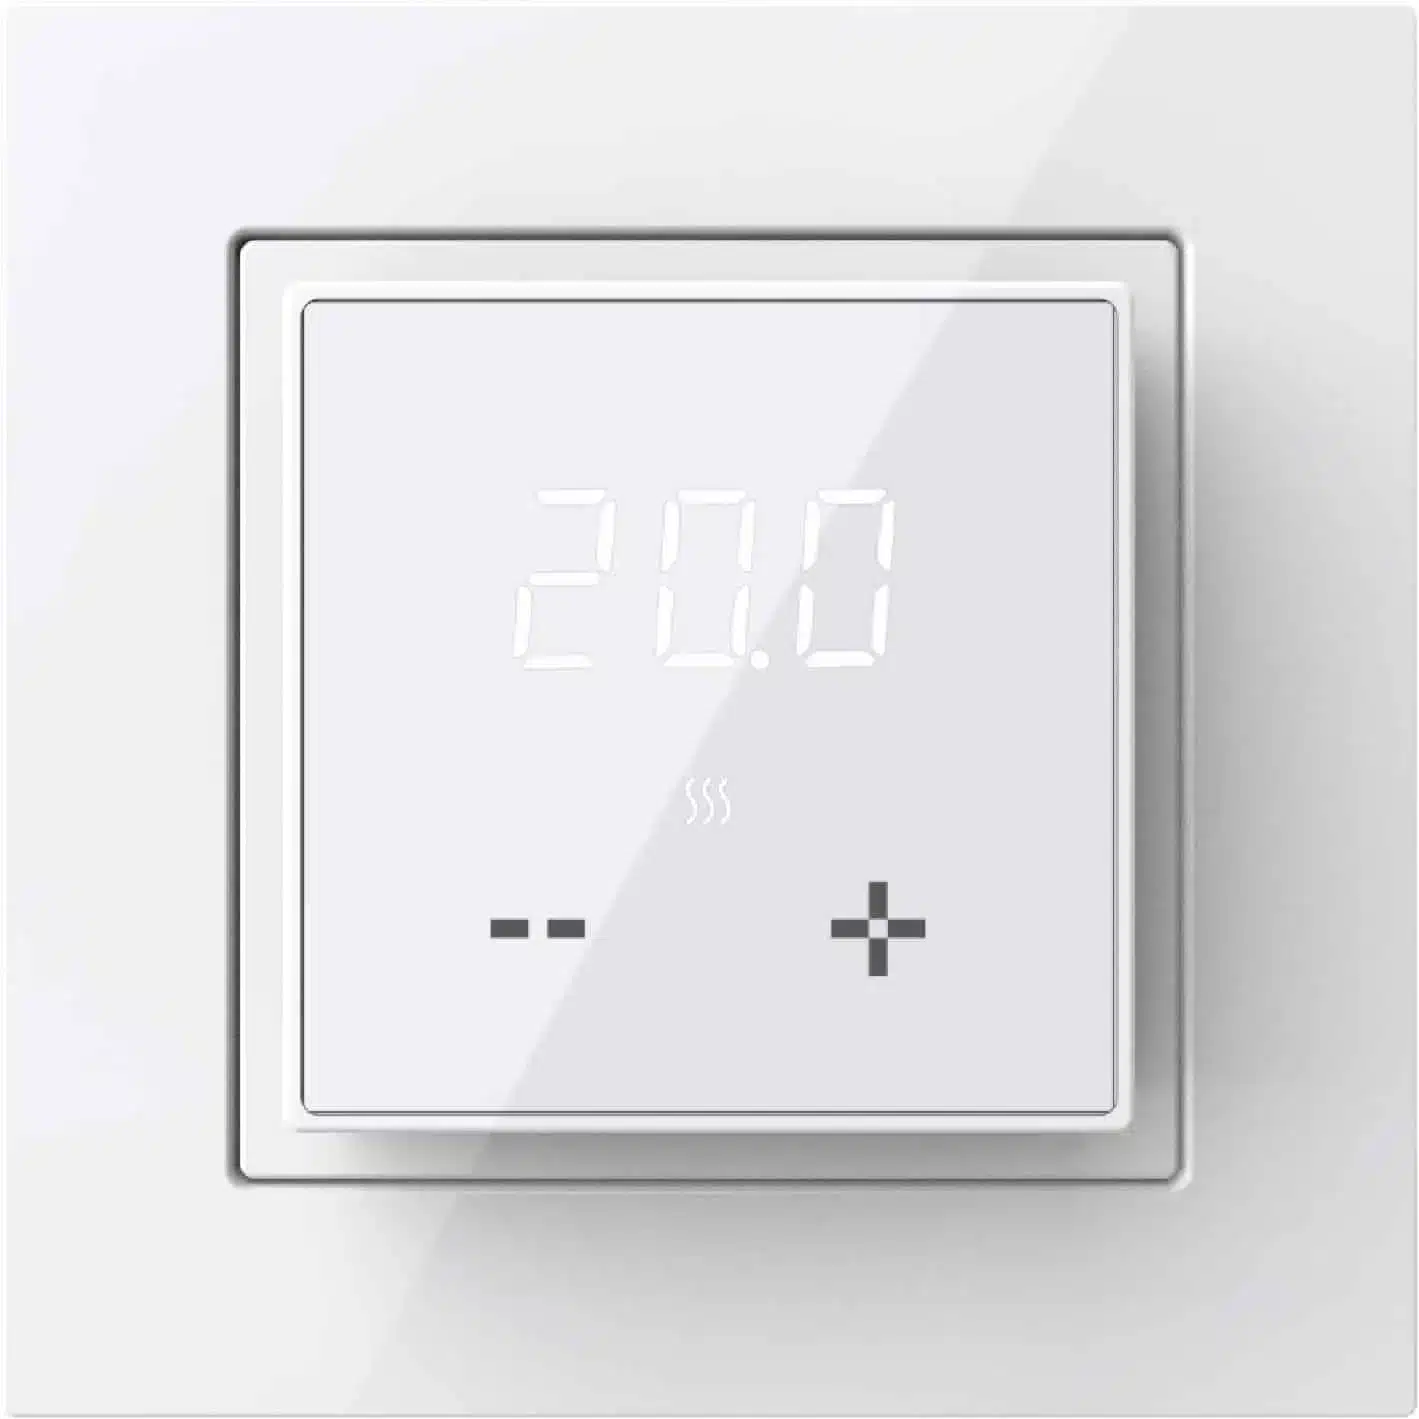 Põrandakütte termostaat põrandaanduriga temperatuuri regulaator